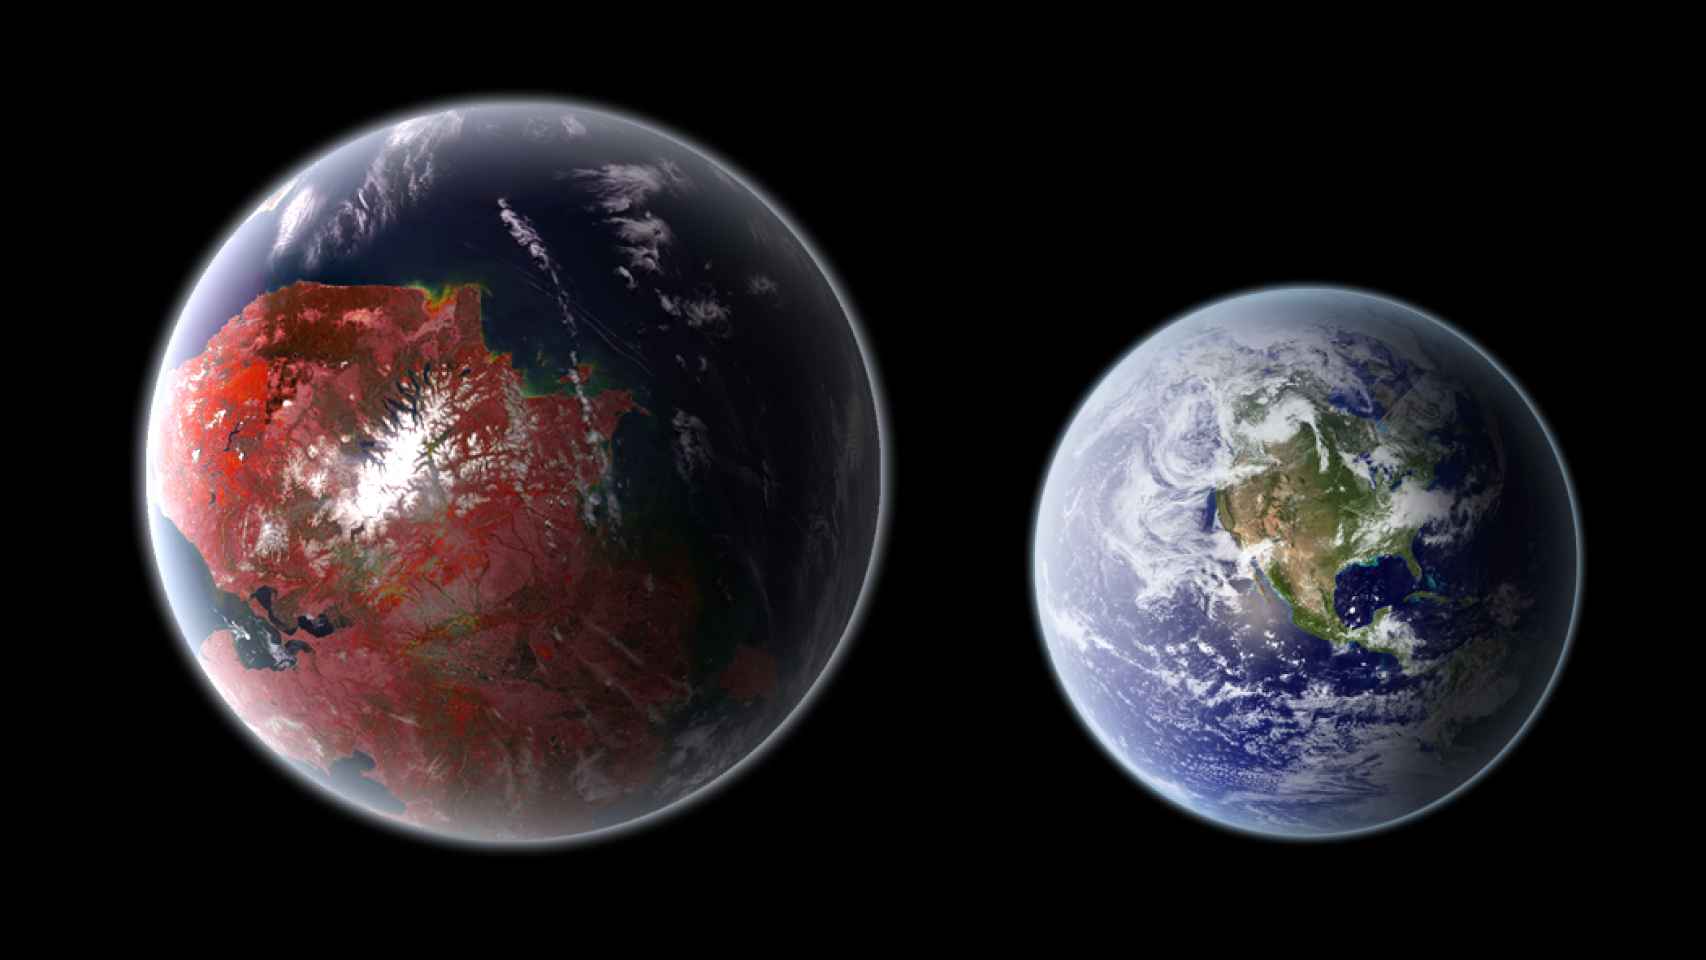 El planeta Kepler 442b, comparado con la Tierra.